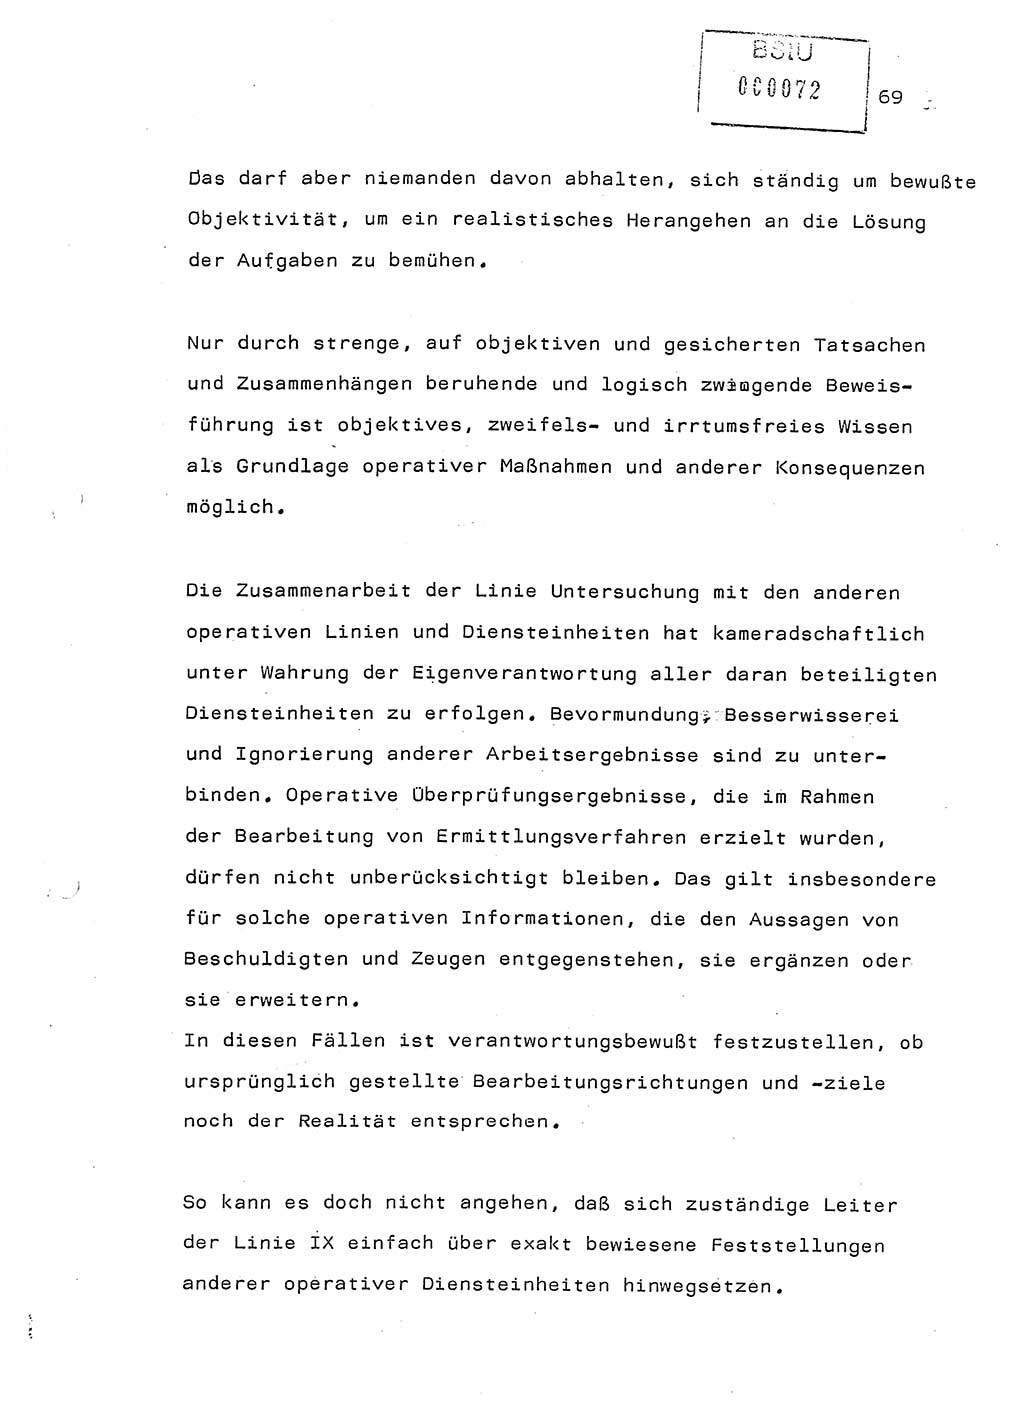 Referat (Generaloberst Erich Mielke) auf der Zentralen Dienstkonferenz am 24.5.1979 [Ministerium für Staatssicherheit (MfS), Deutsche Demokratische Republik (DDR), Der Minister], Berlin 1979, Seite 69 (Ref. DK DDR MfS Min. /79 1979, S. 69)